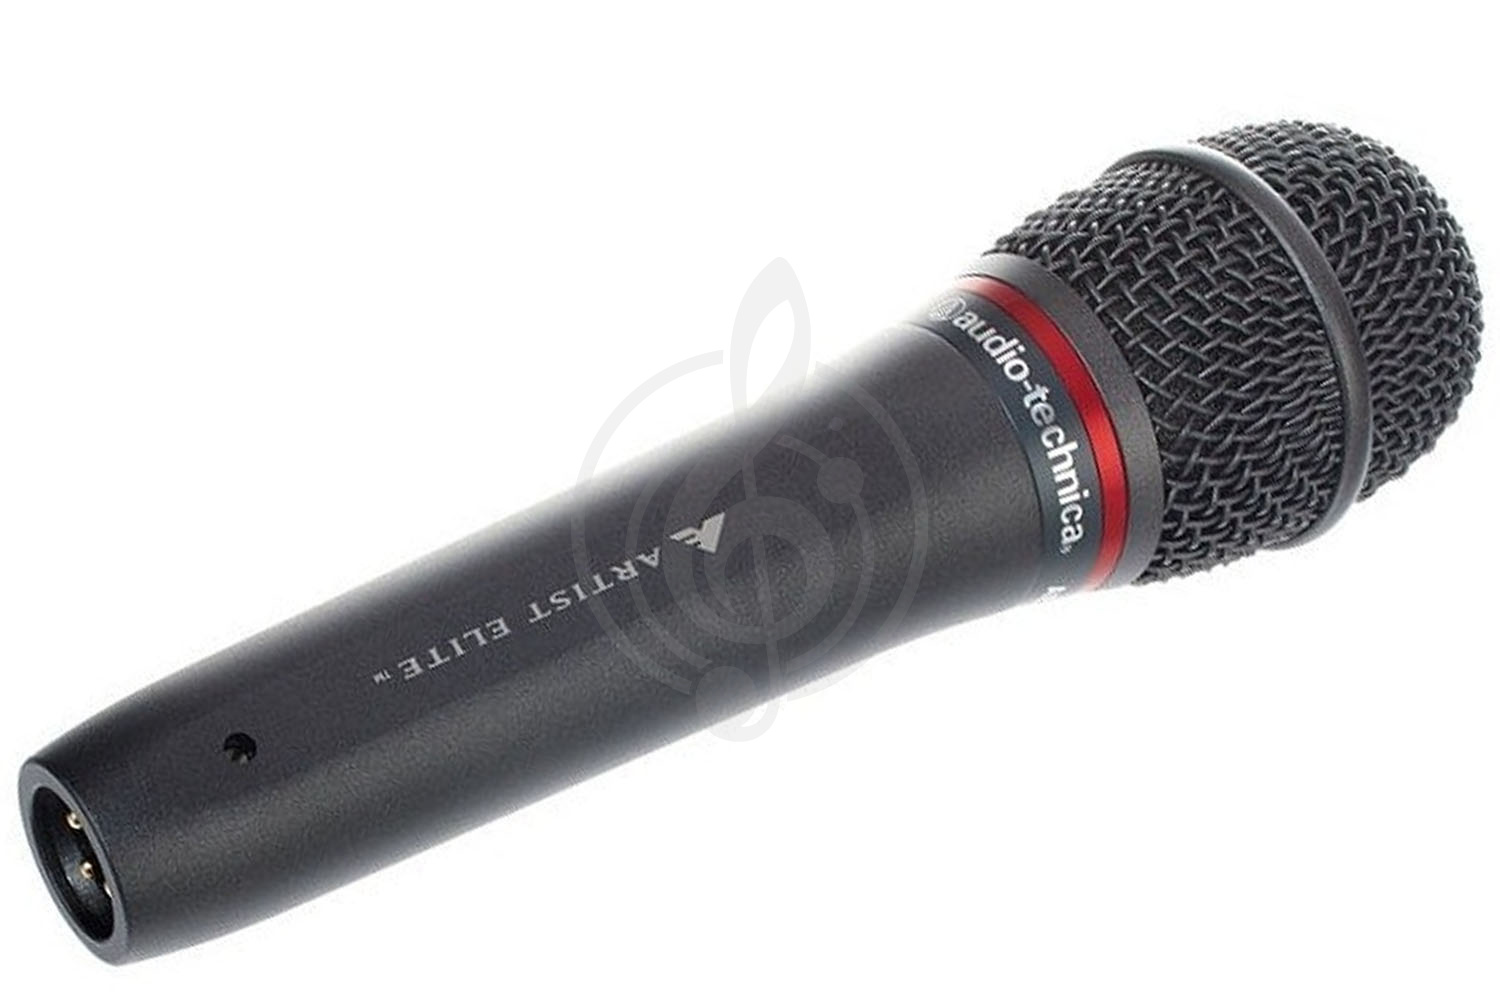 Динамический вокальный микрофон Динамические вокальные микрофоны AUDIO-TECHNICA Audio-Technica AE4100 - динамический вокальный микрофон AE4100 - фото 1